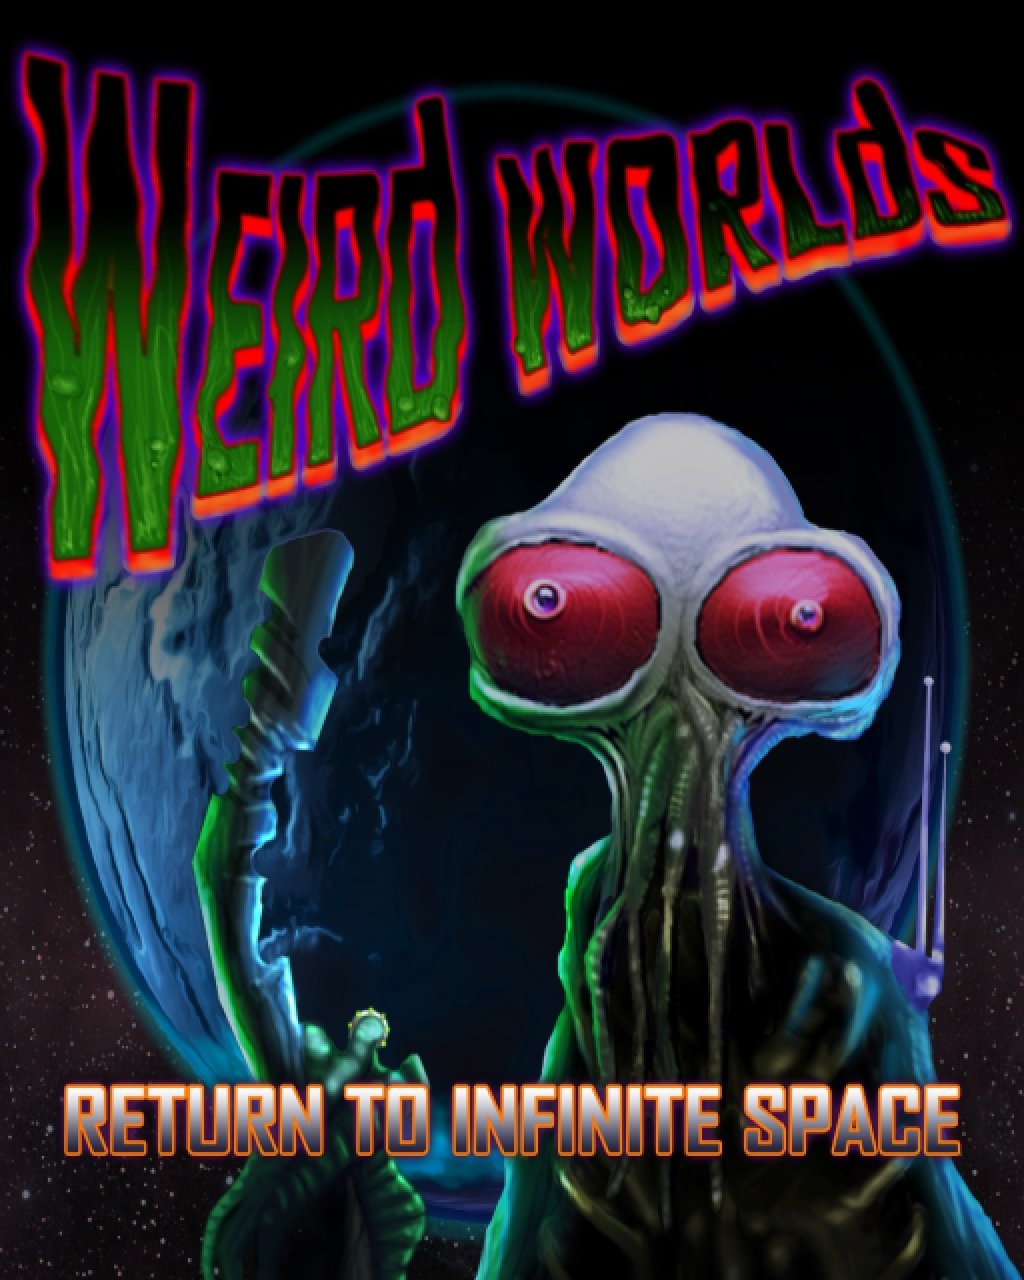 Weird Worlds Return to Infinite Space